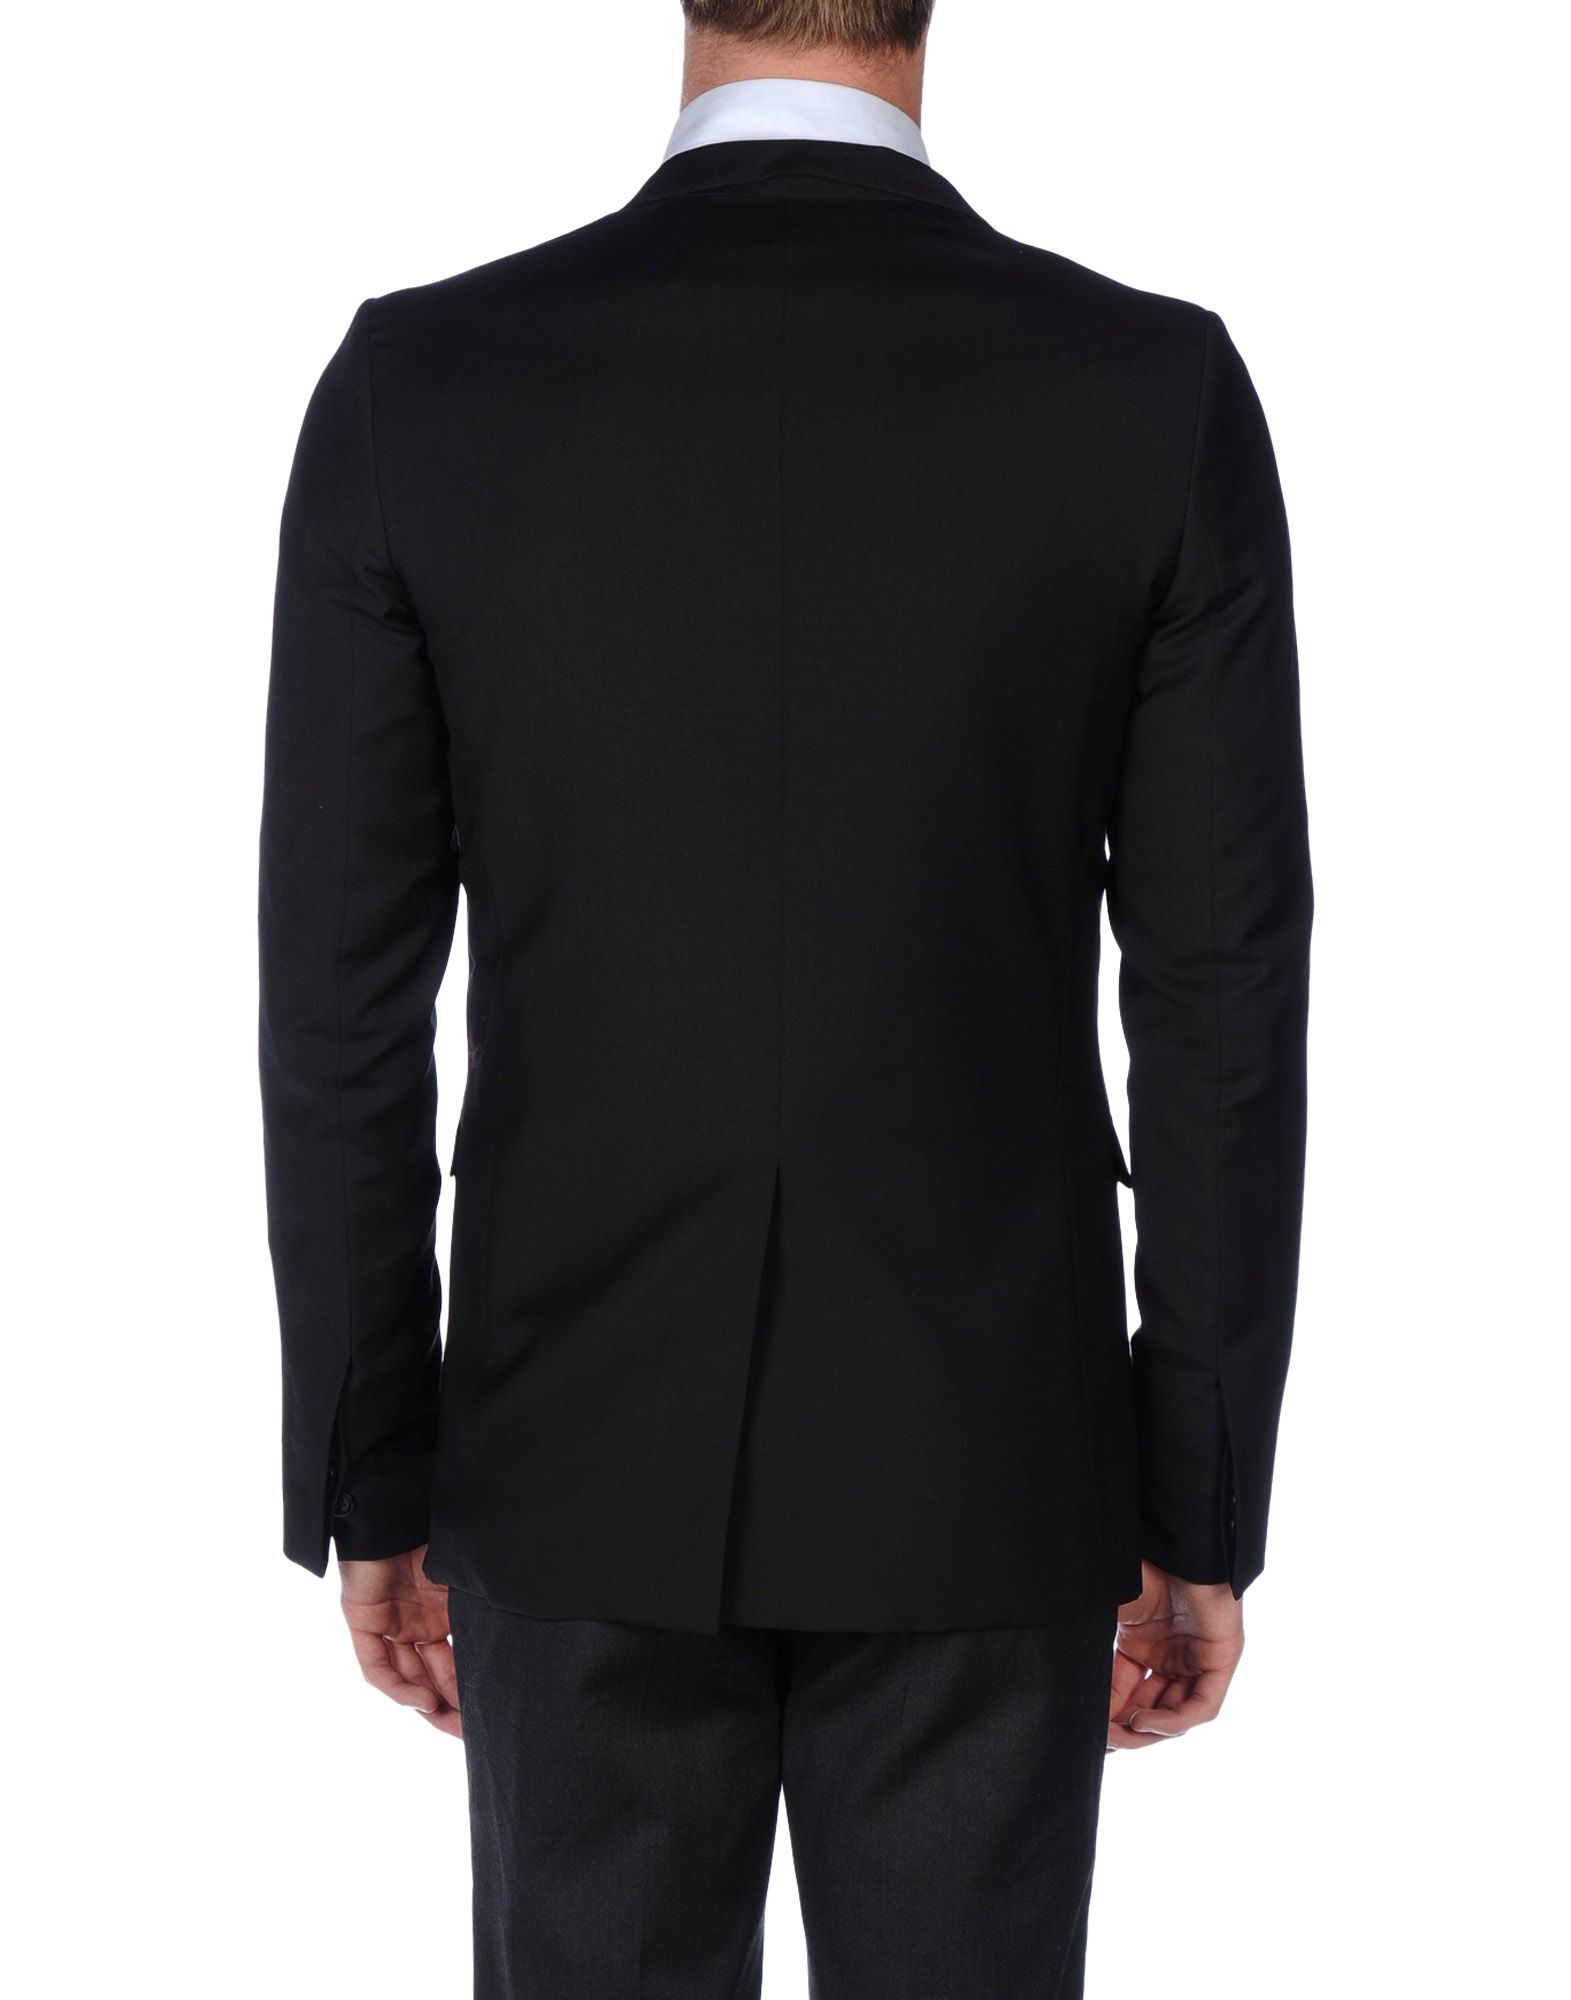 Lyst - Dior Homme Blazer in Black for Men